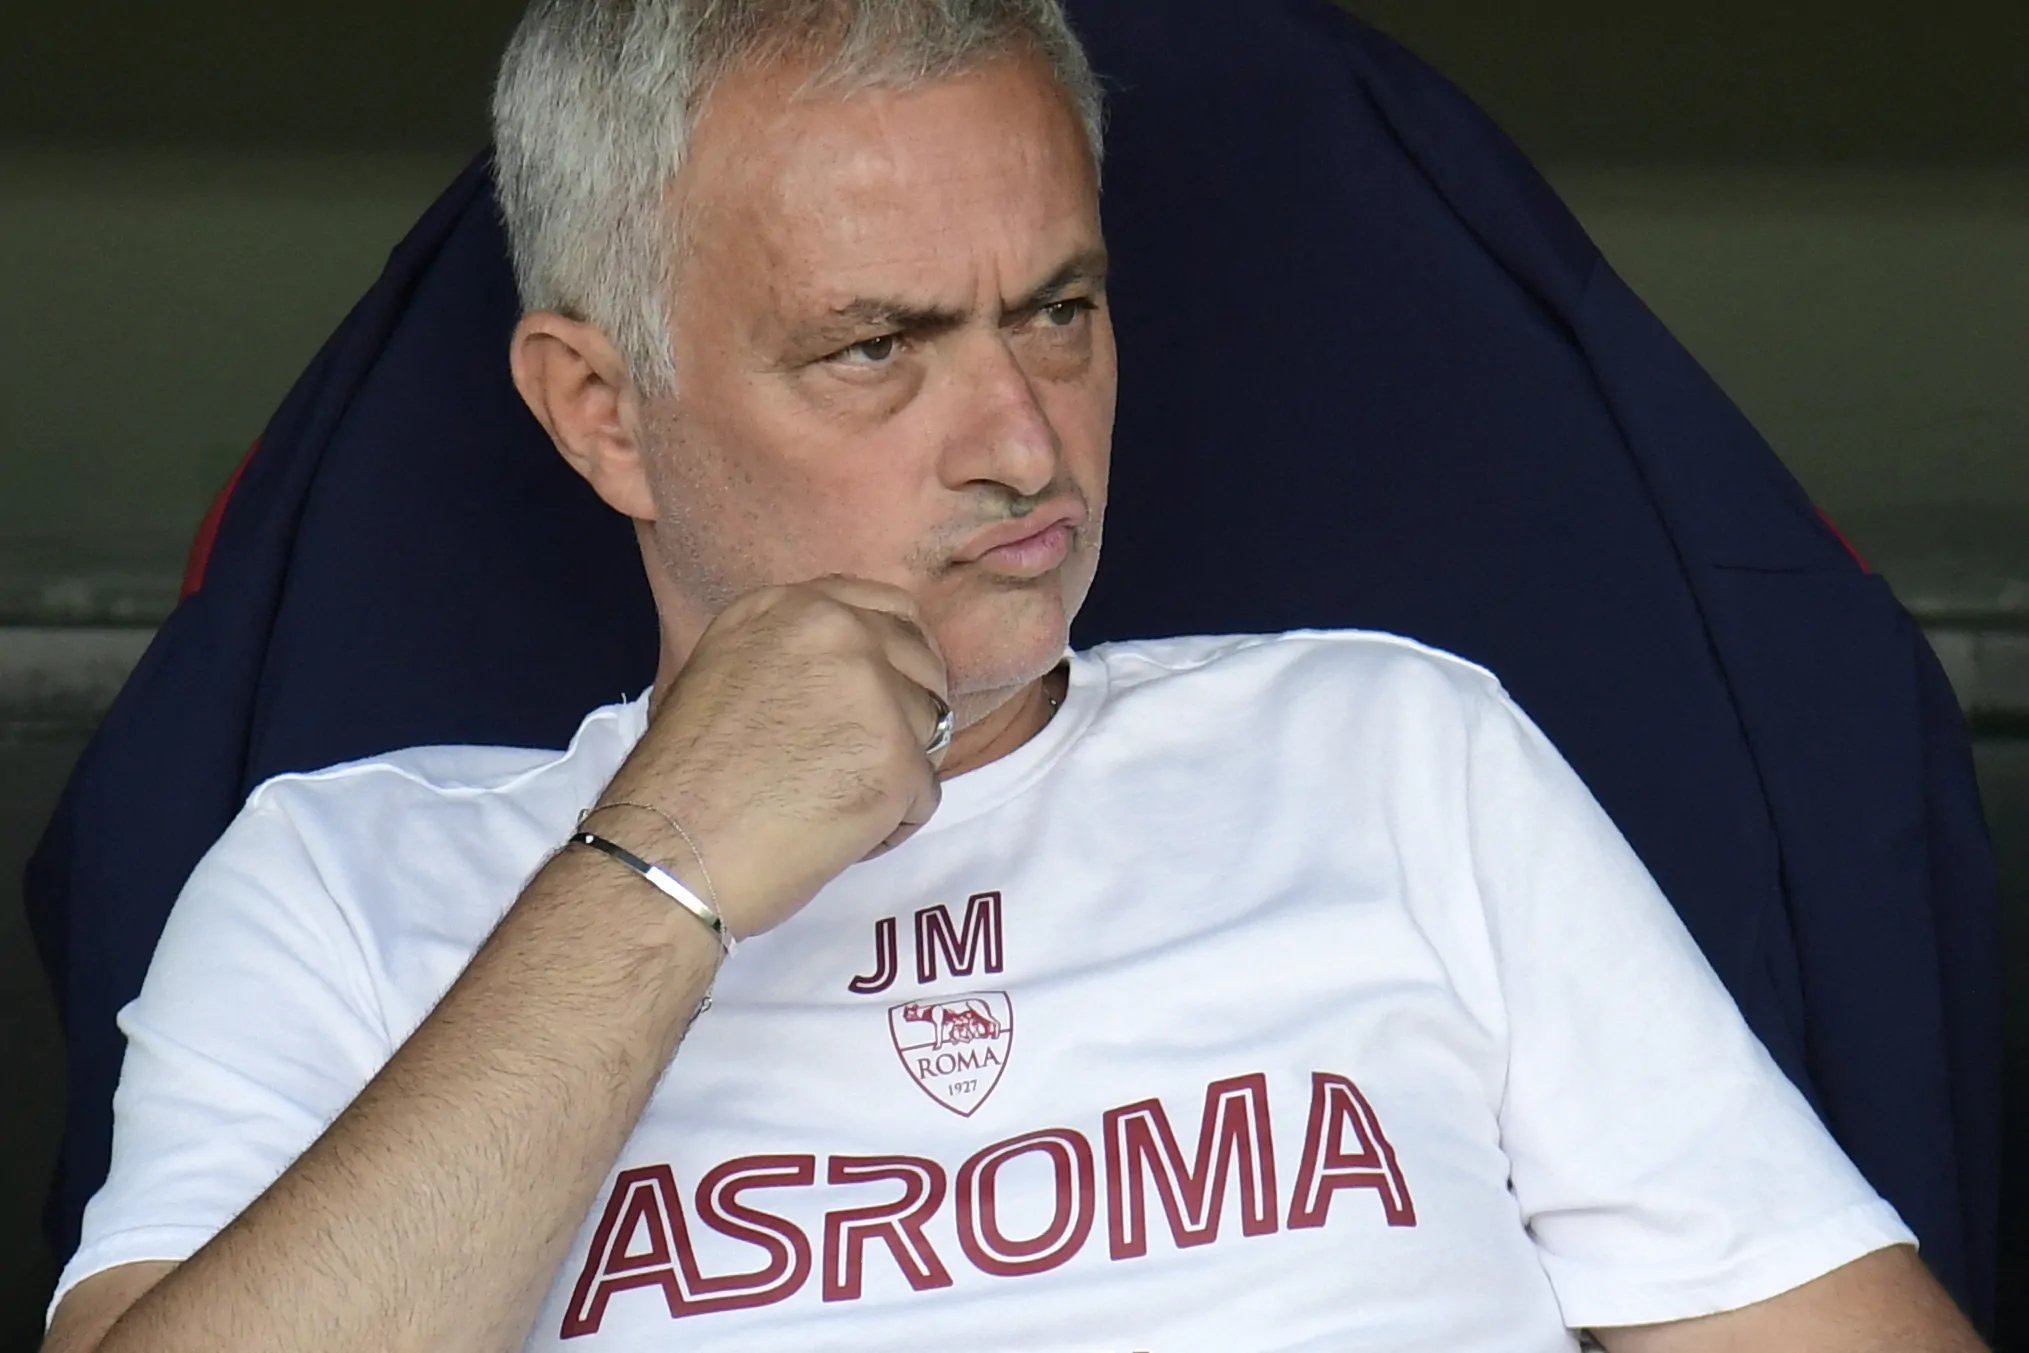 Mourinho a sorpresa: “Avessi vinto io il derby come l’ha vinto Sarri mi avrebbero ucciso!”